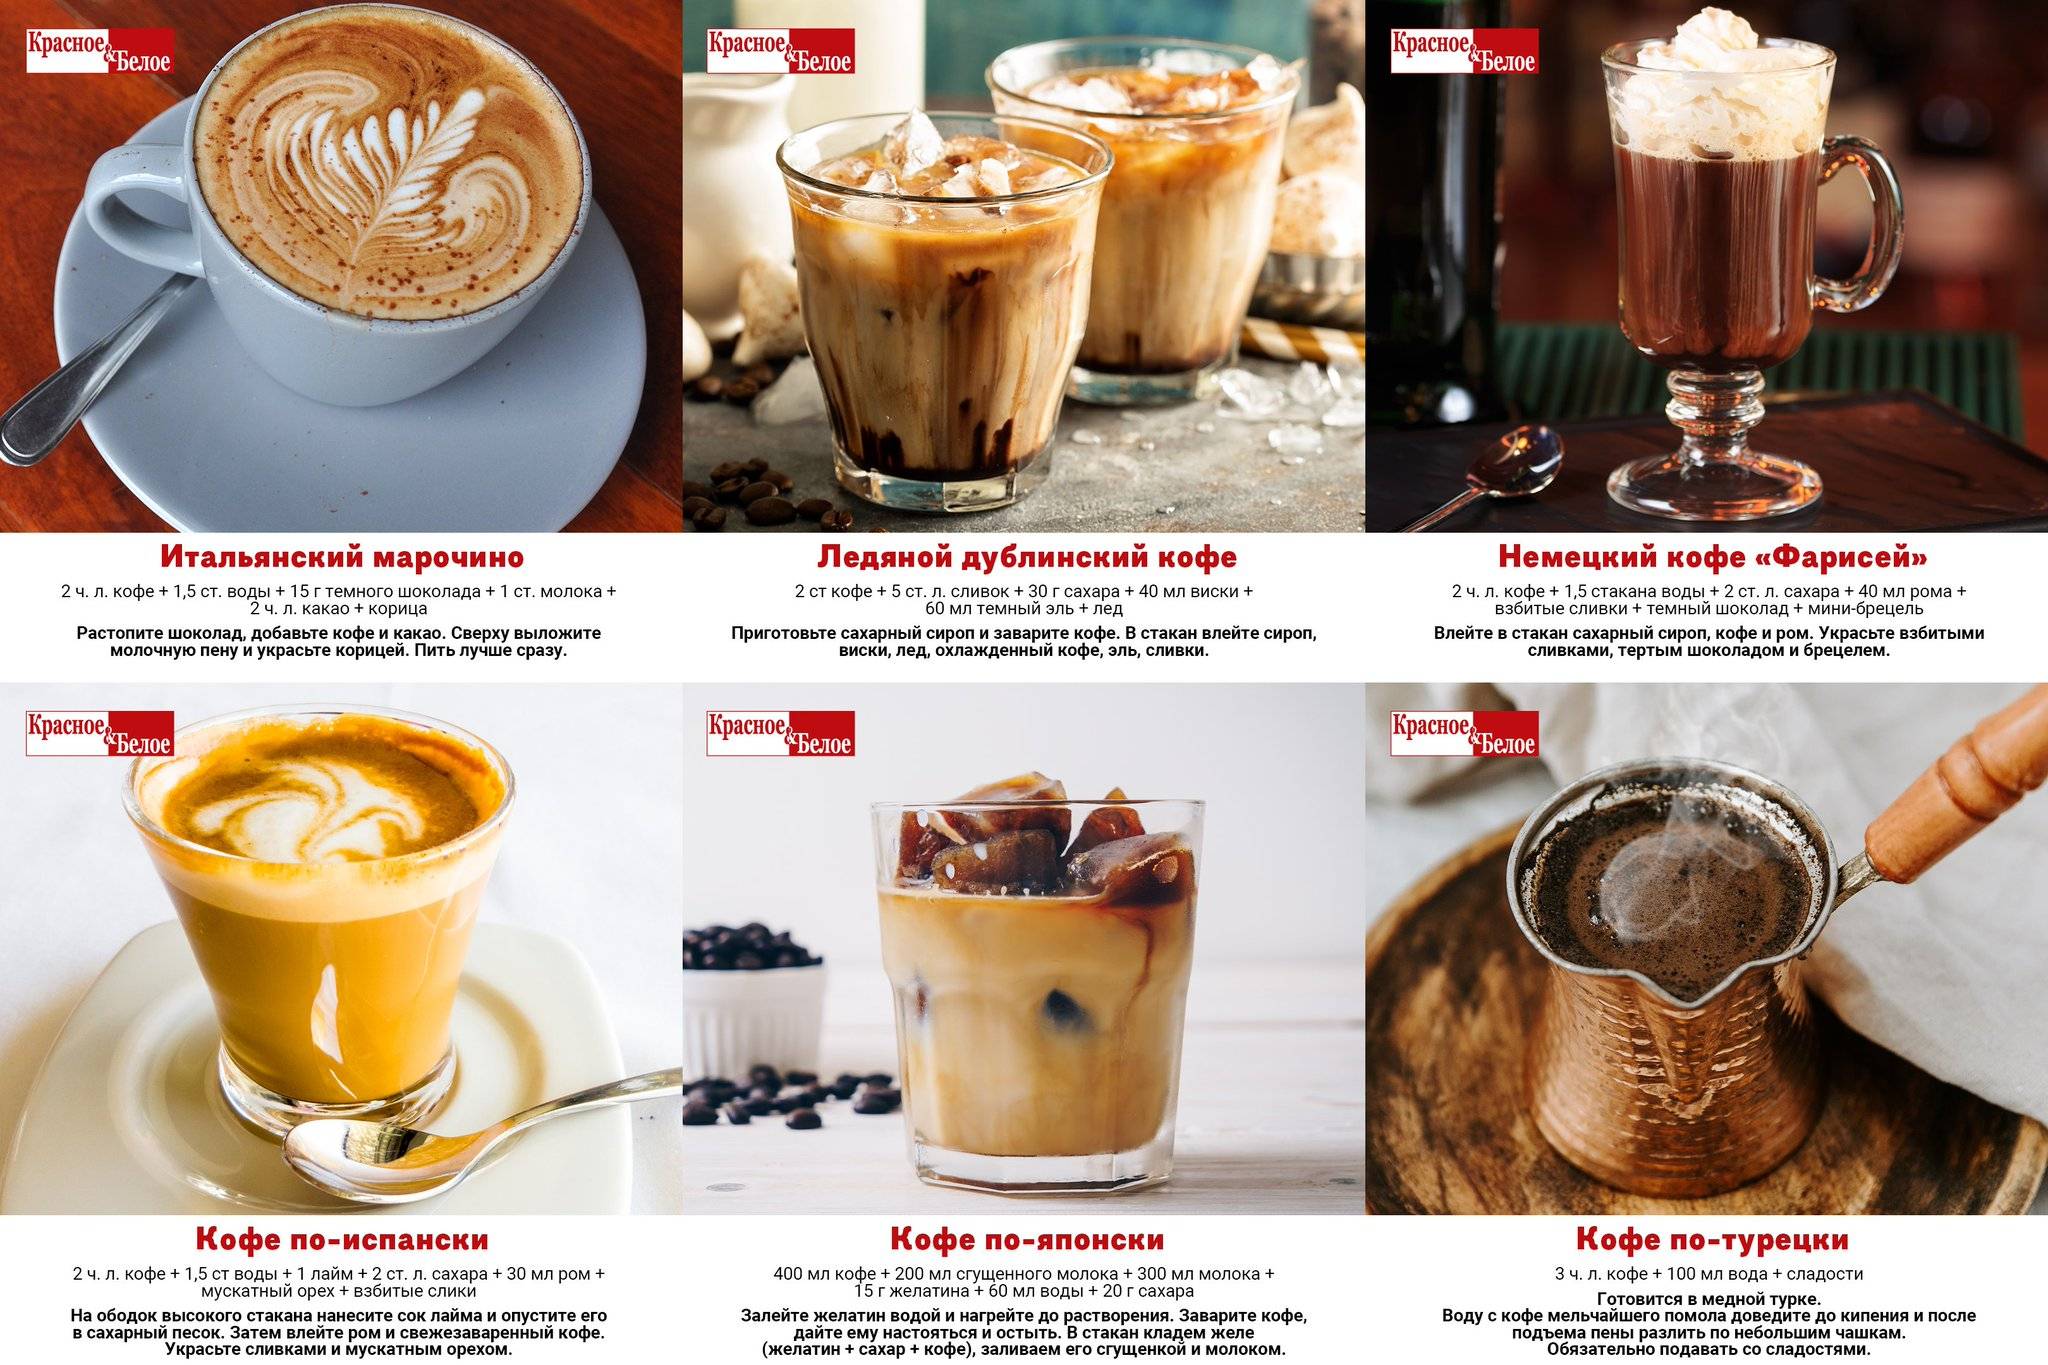 Холодный кофе – рецепты от традиционных до экзотических